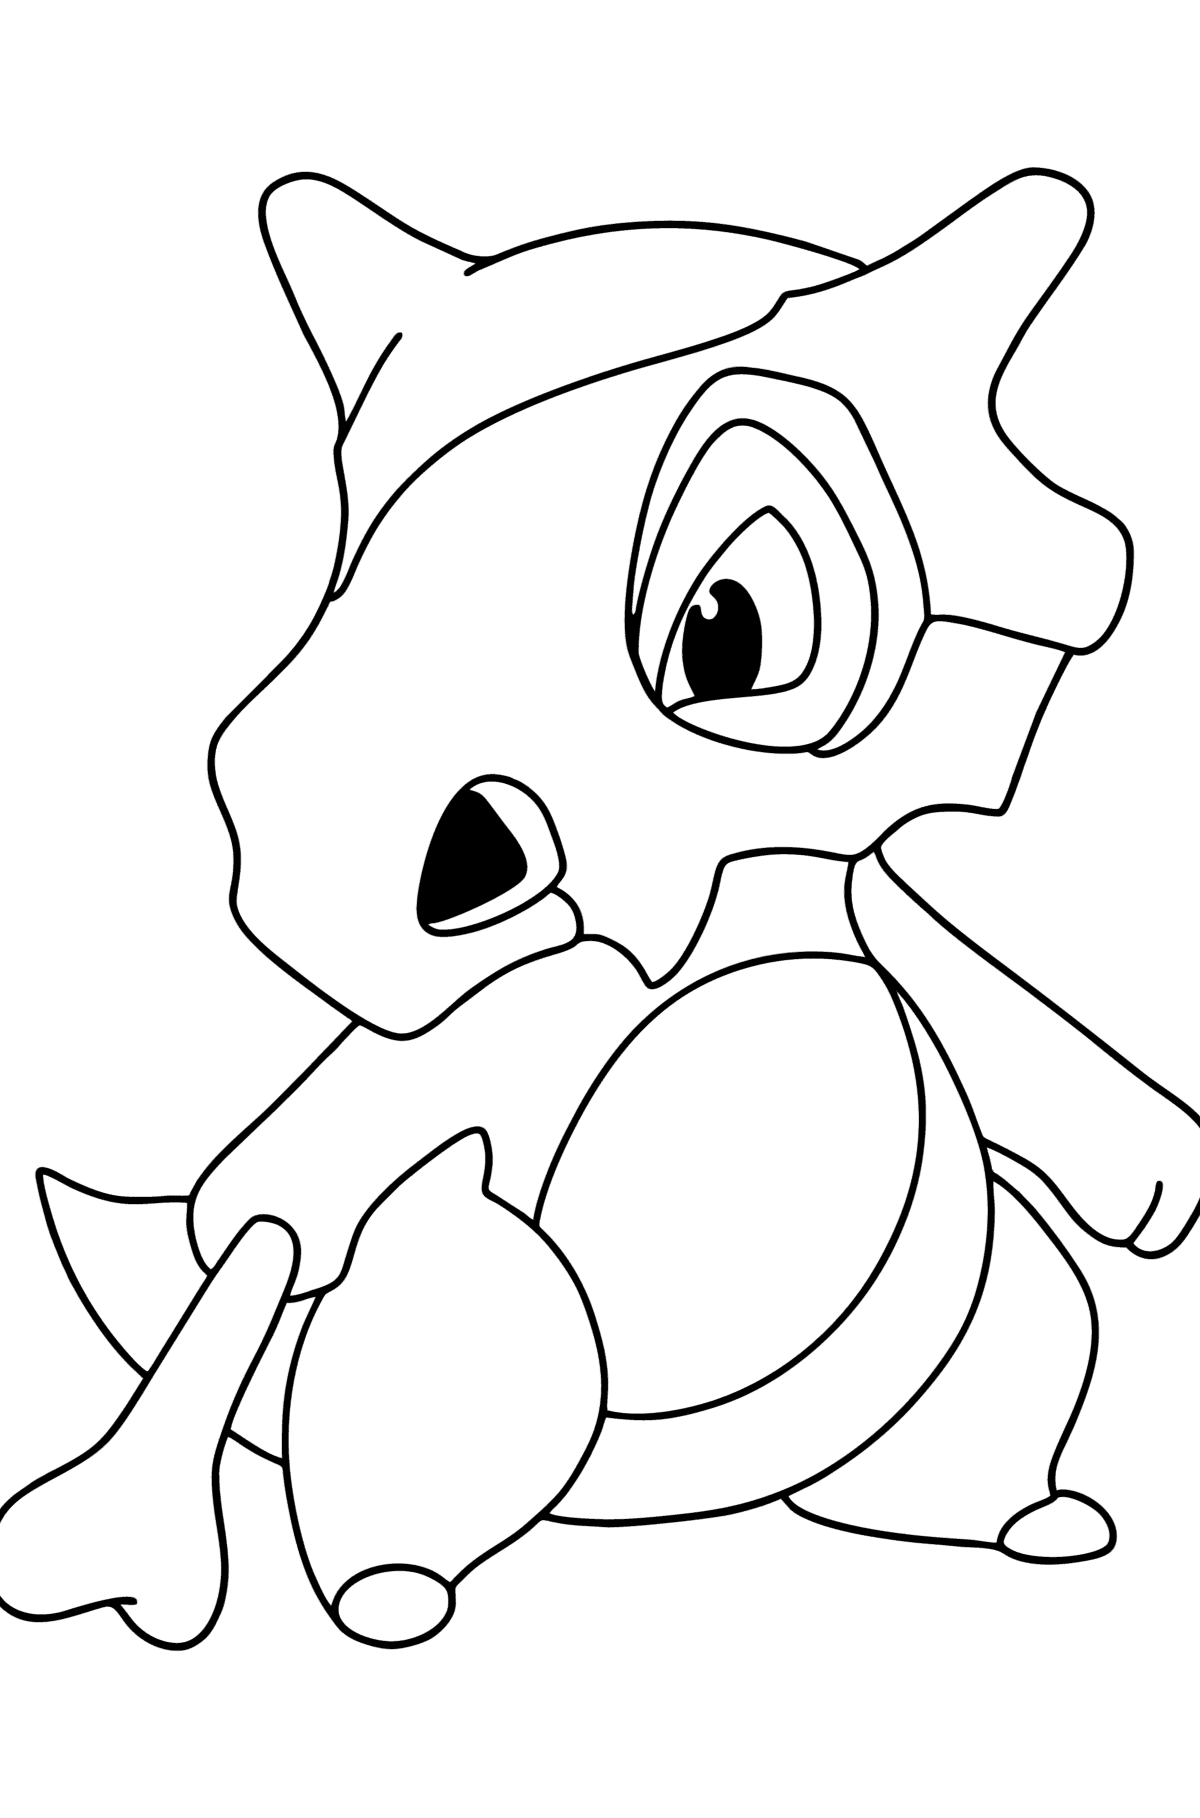 Раскраска Pokemon Go Cubone - Картинки для Детей